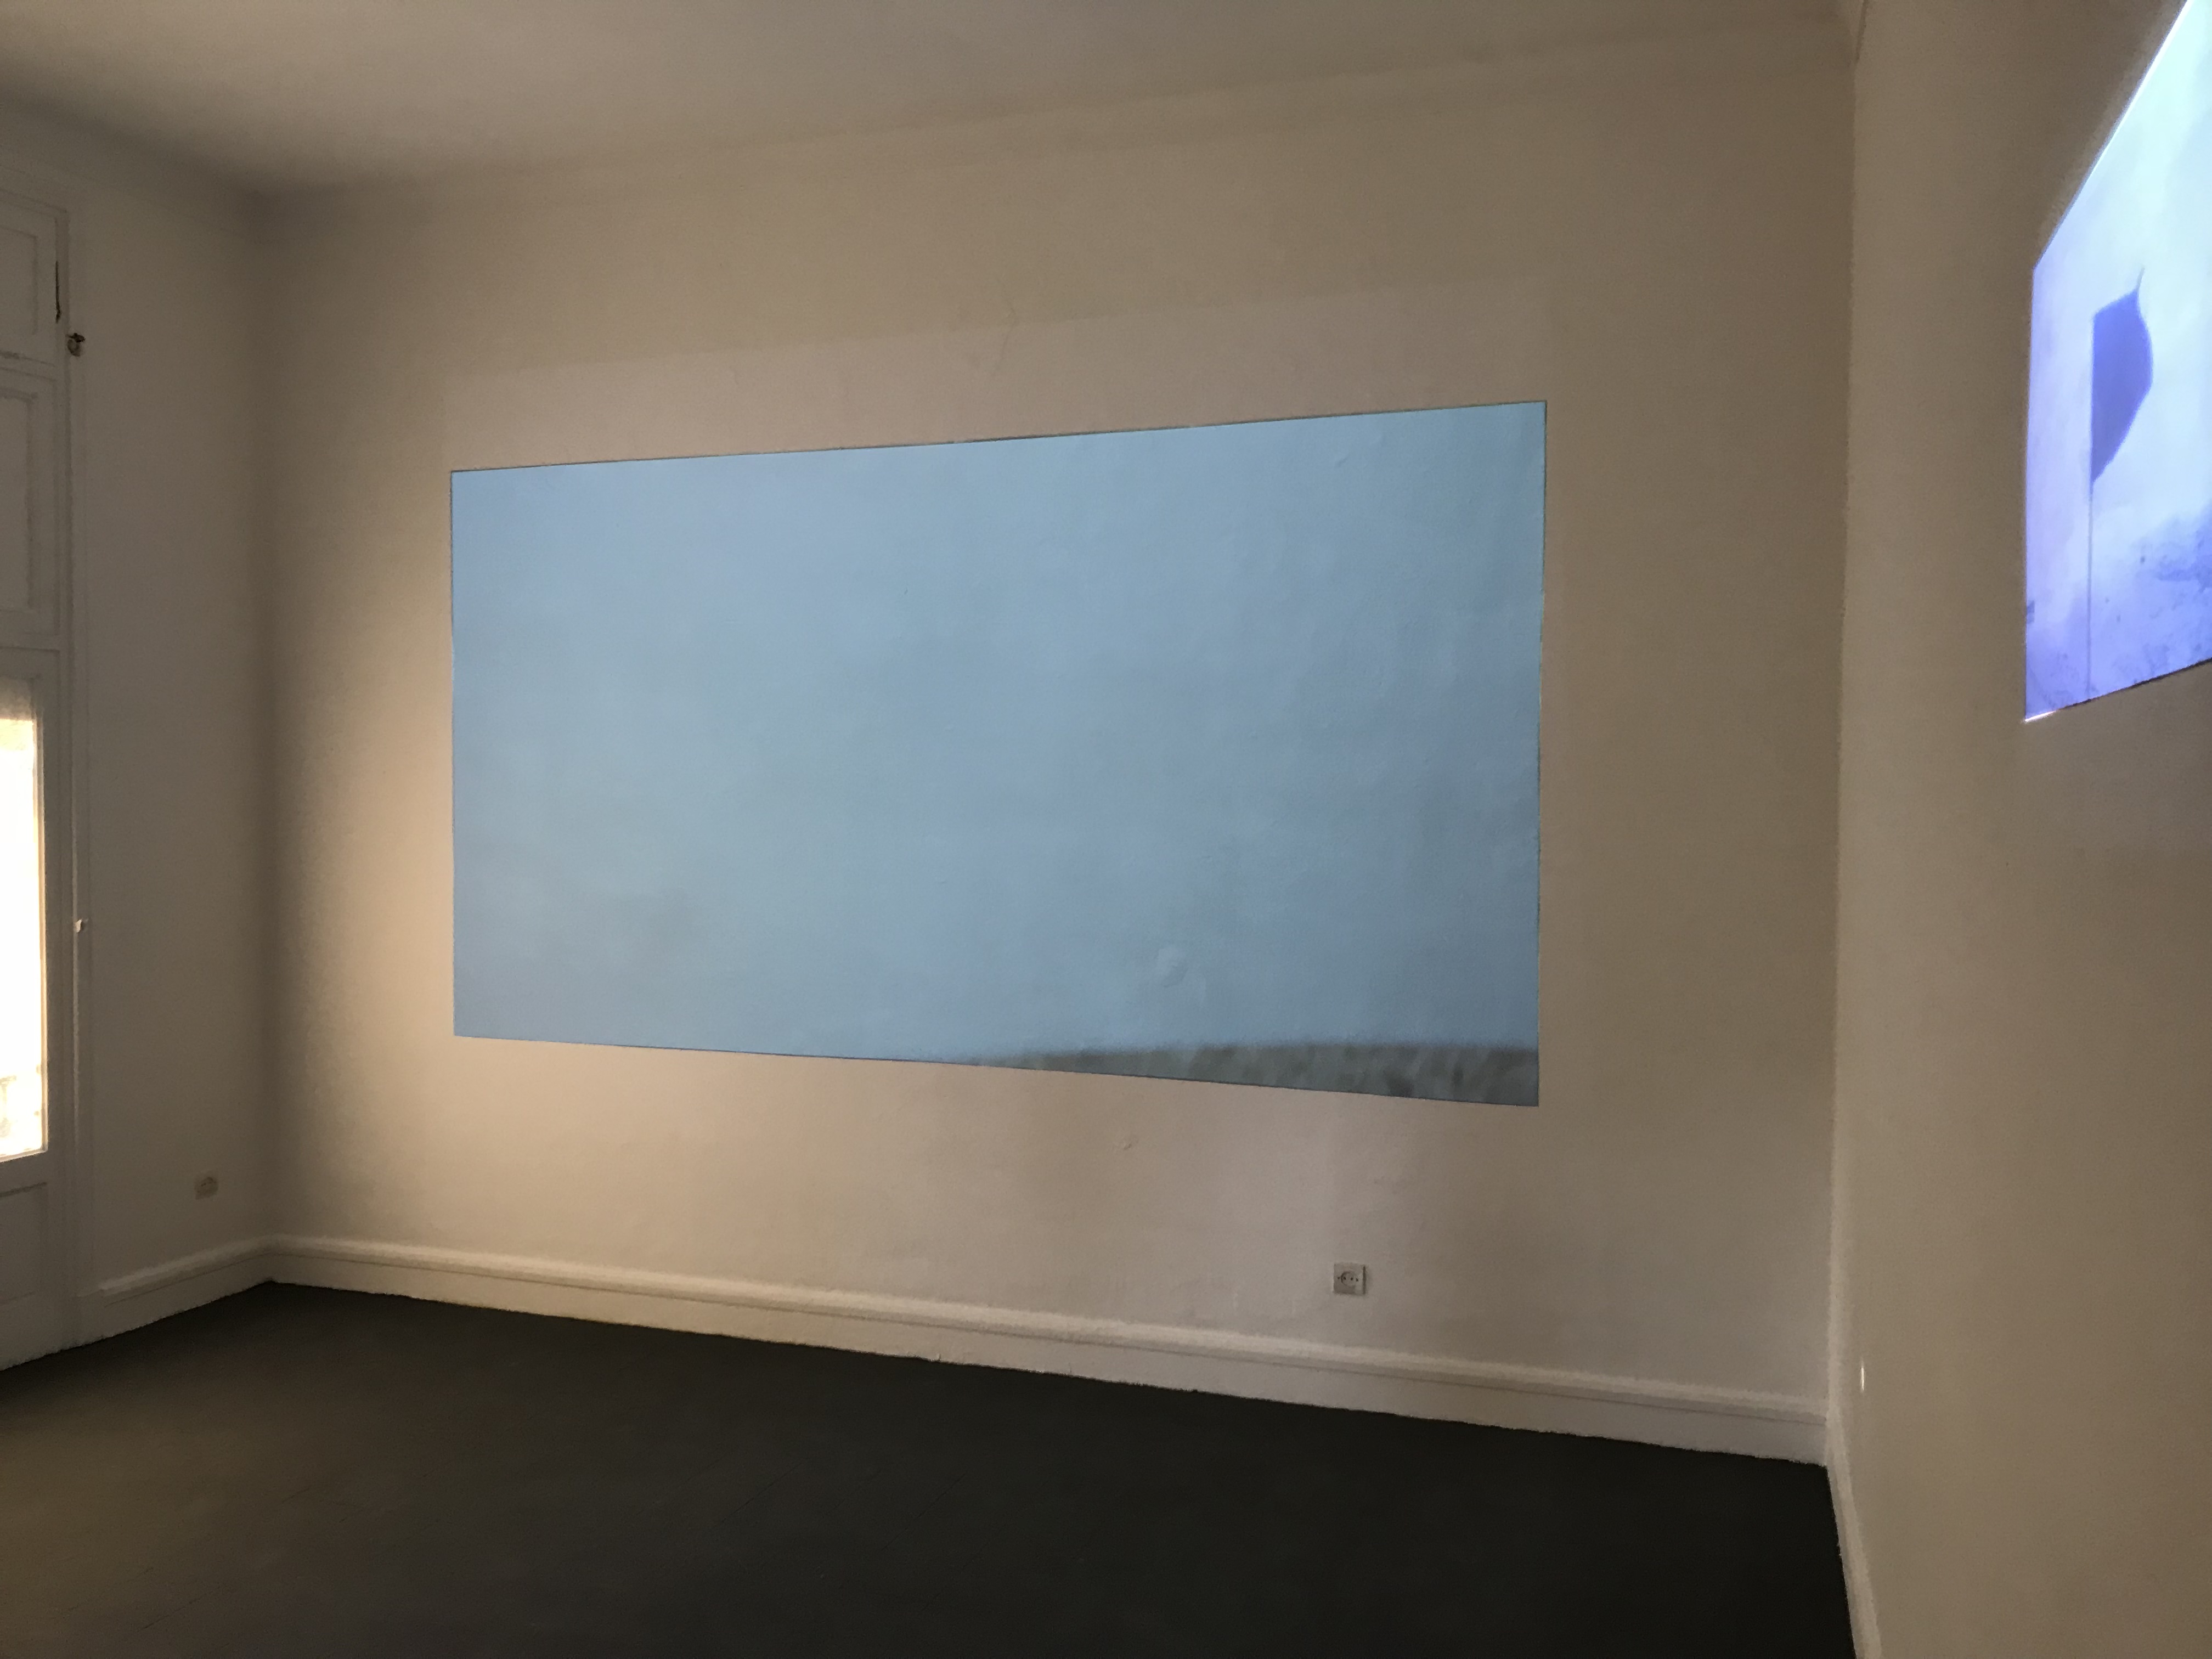 vue d'exposition "Ismail Bahri: Lieux" à L'appartement 22, 2017.